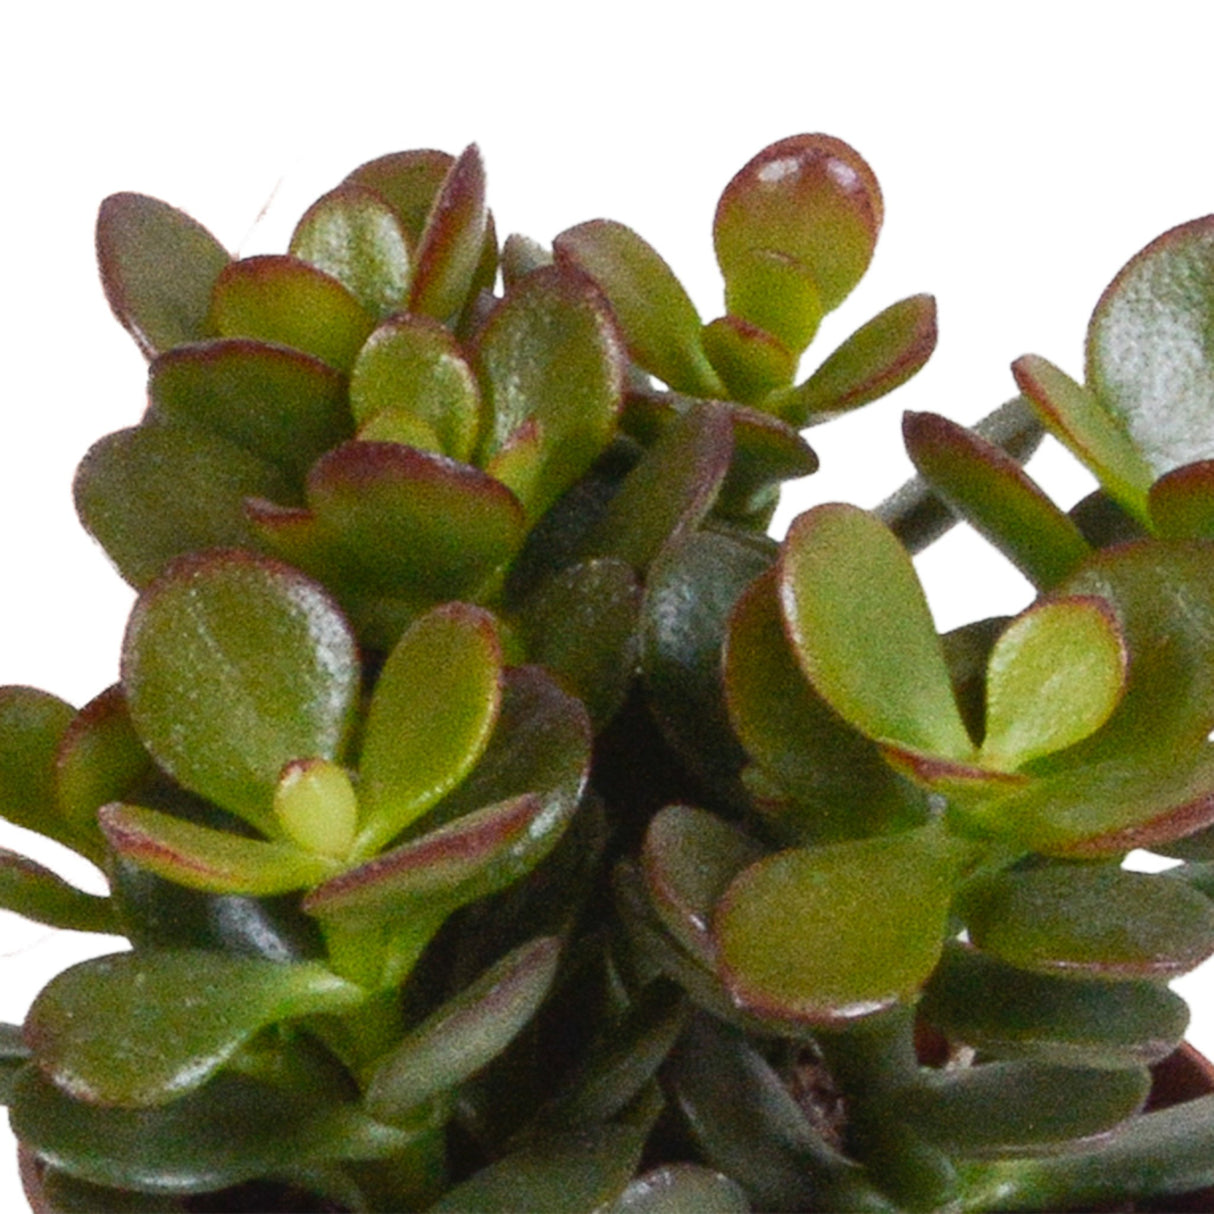 Livraison plante Coffret crassula - Lot de 3 plantes, h18cm - box cadeau mini succulente